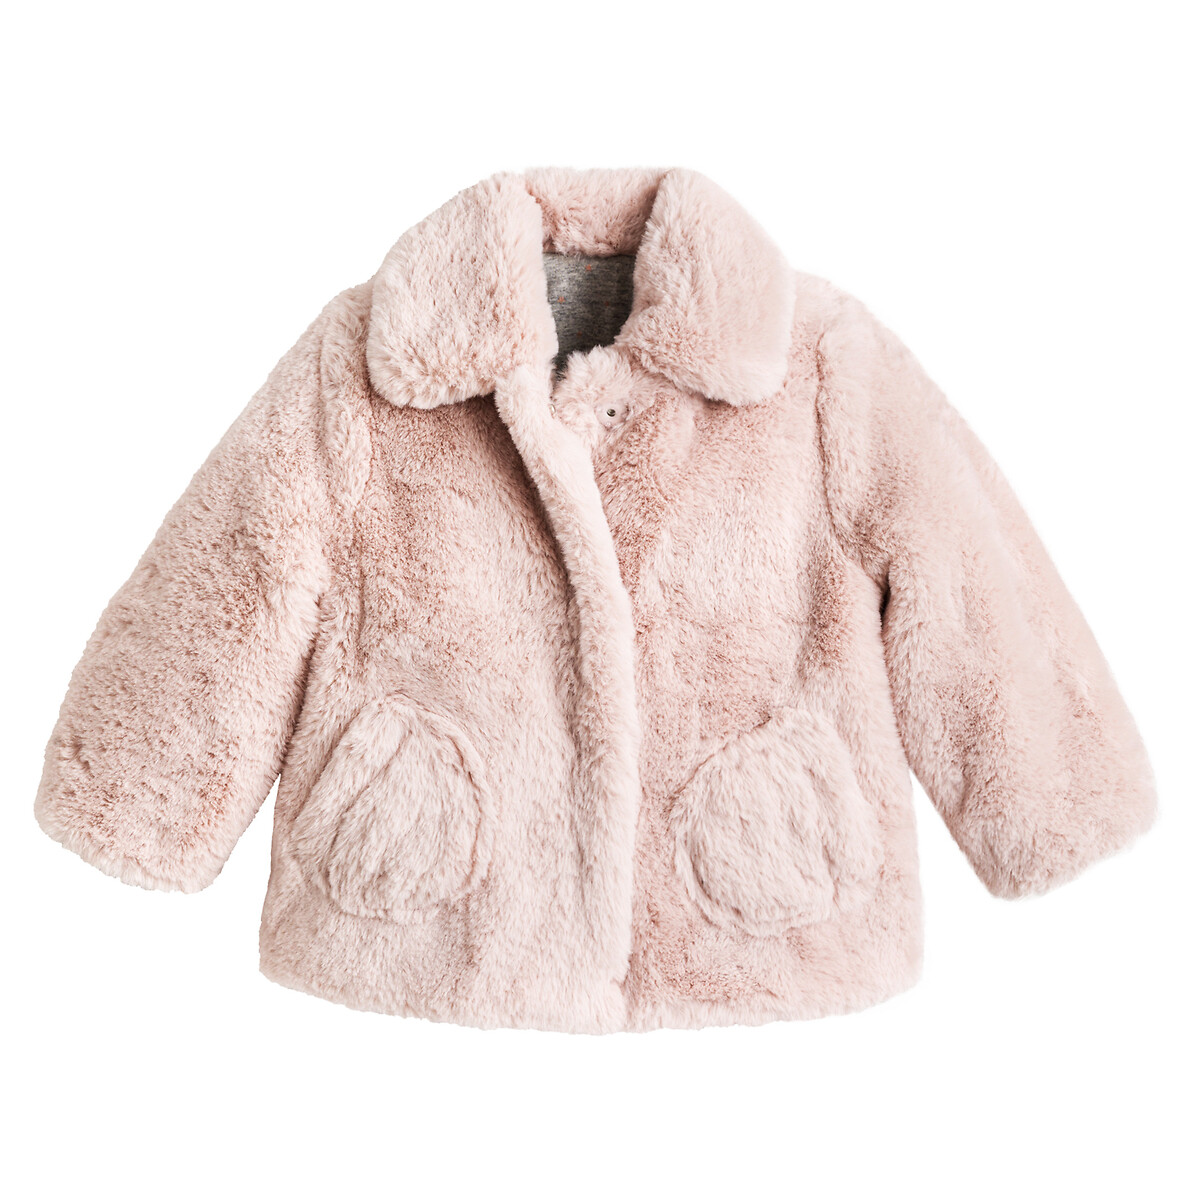 Куртка LaRedoute Из искусственного меха 3 мес-4 лет 18 мес. - 81 см розовый, размер 18 мес. - 81 см